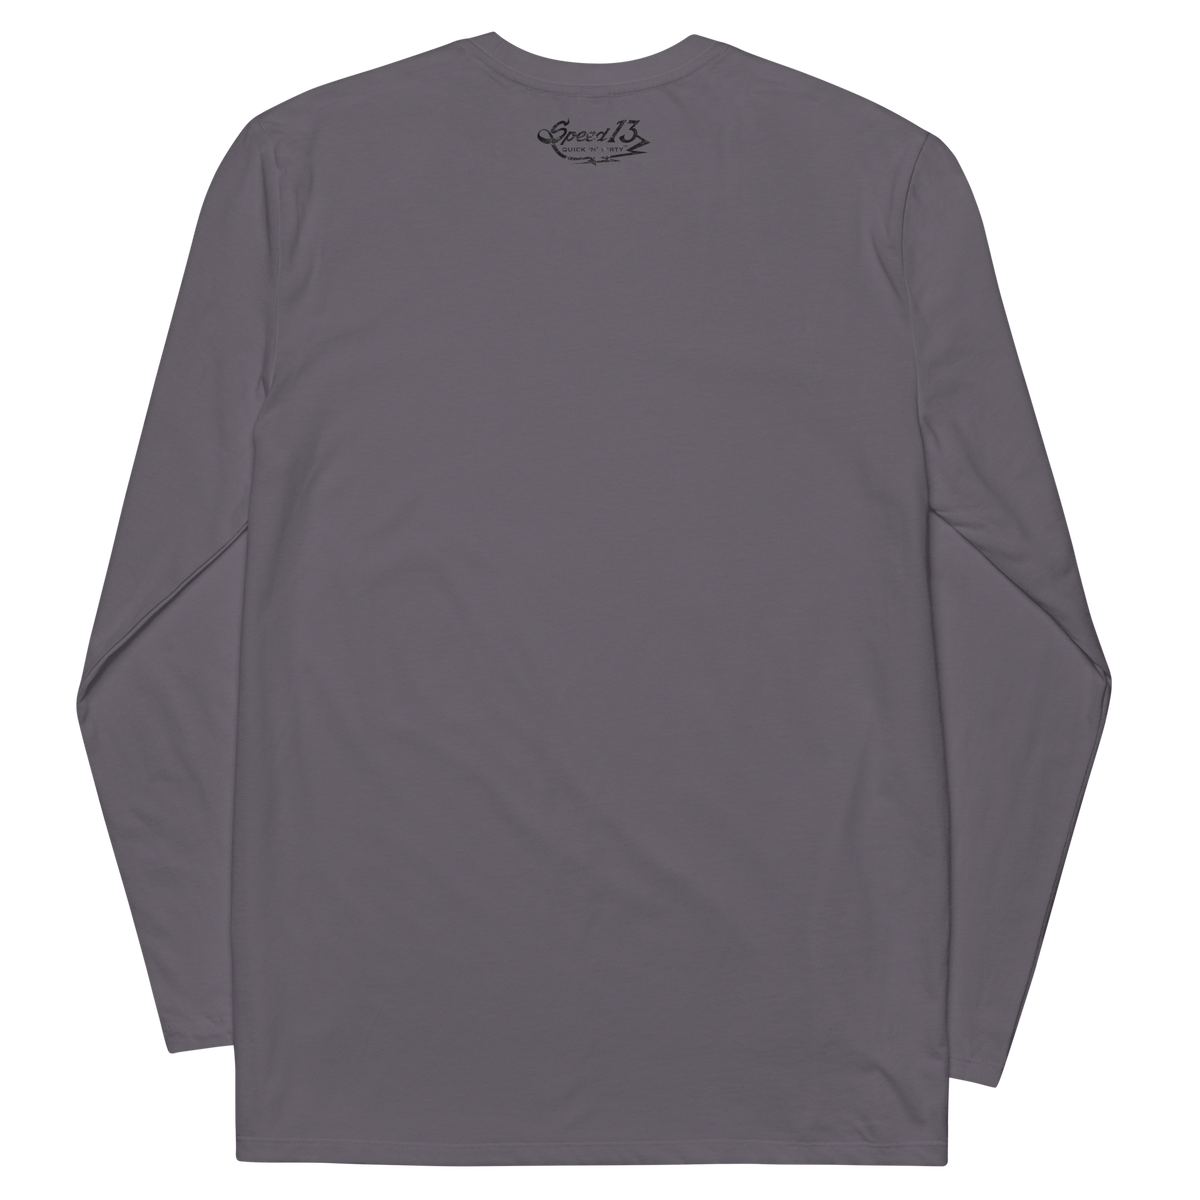 Unisex fashion long sleeve shirt